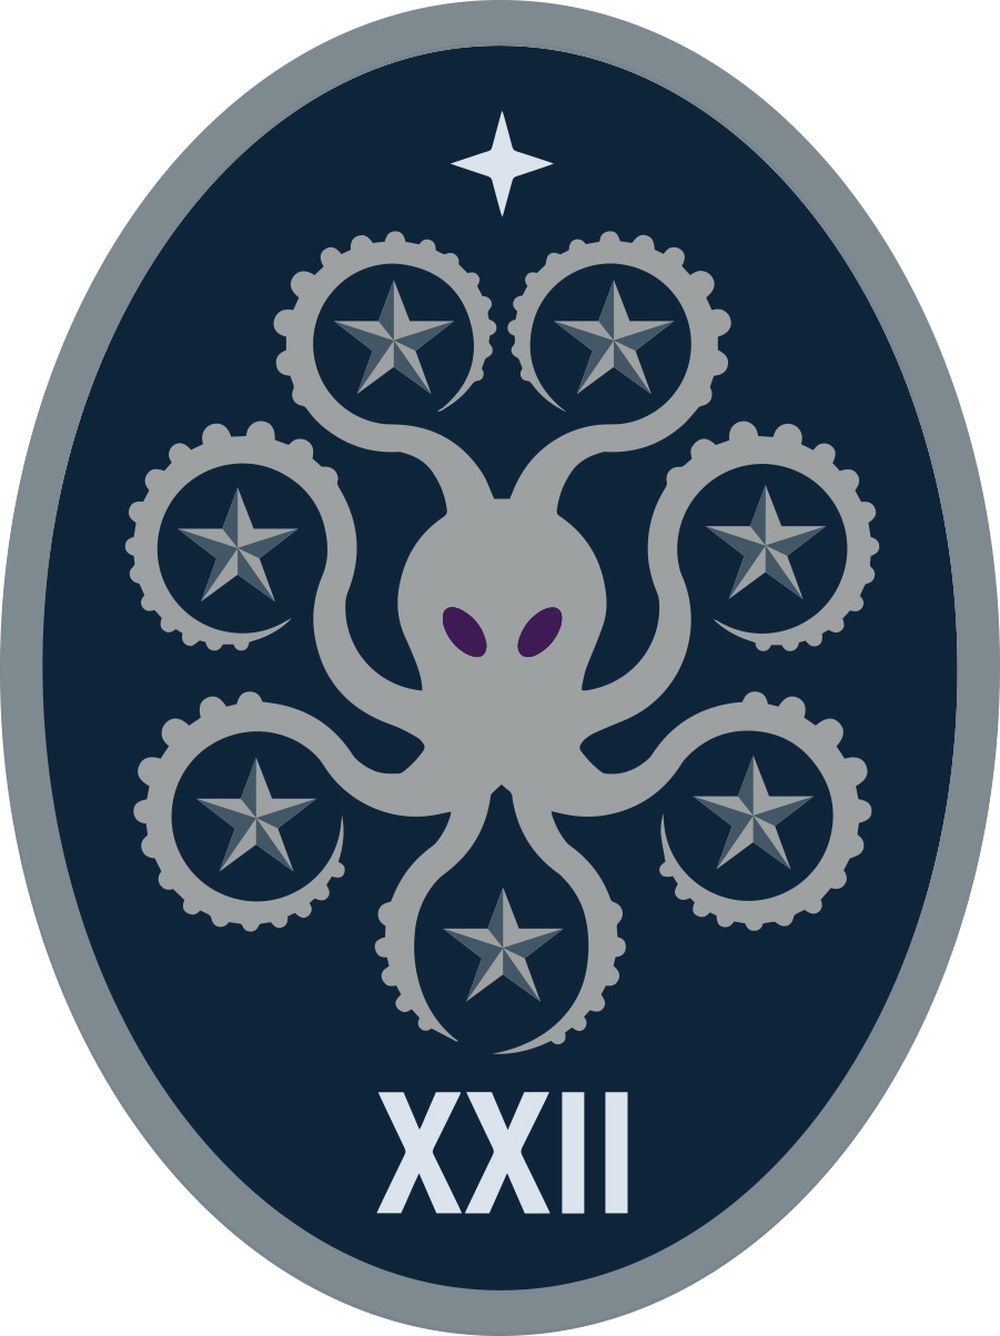 22 SOPS - Official Emblem